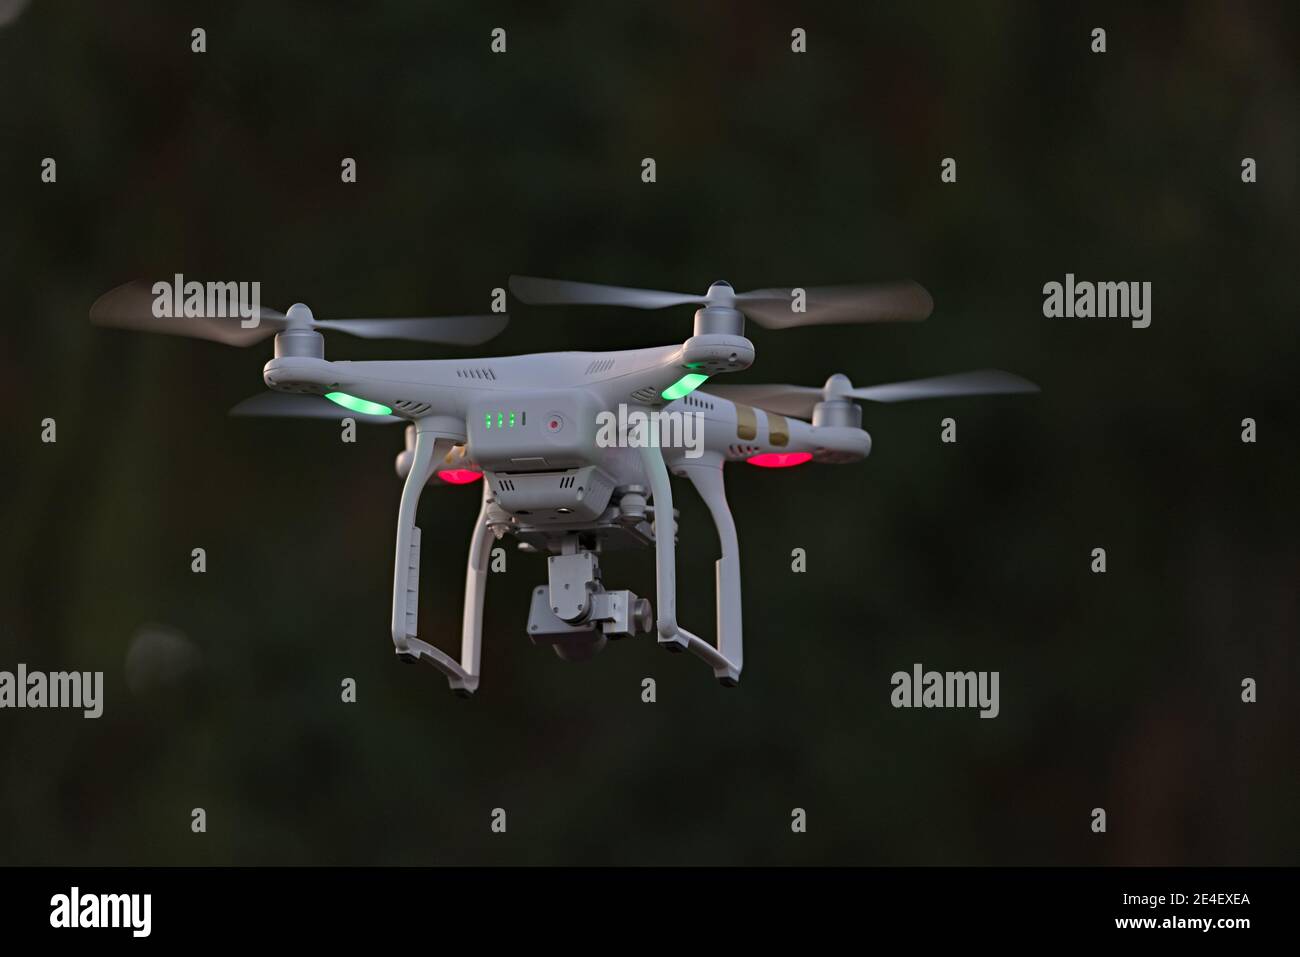 25 - vue arrière de la caméra professionnelle quadcopter drone stationnaire. En regardant par l'arrière, vous pouvez voir les voyants d'état de la batterie et l'orientation verte. Banque D'Images